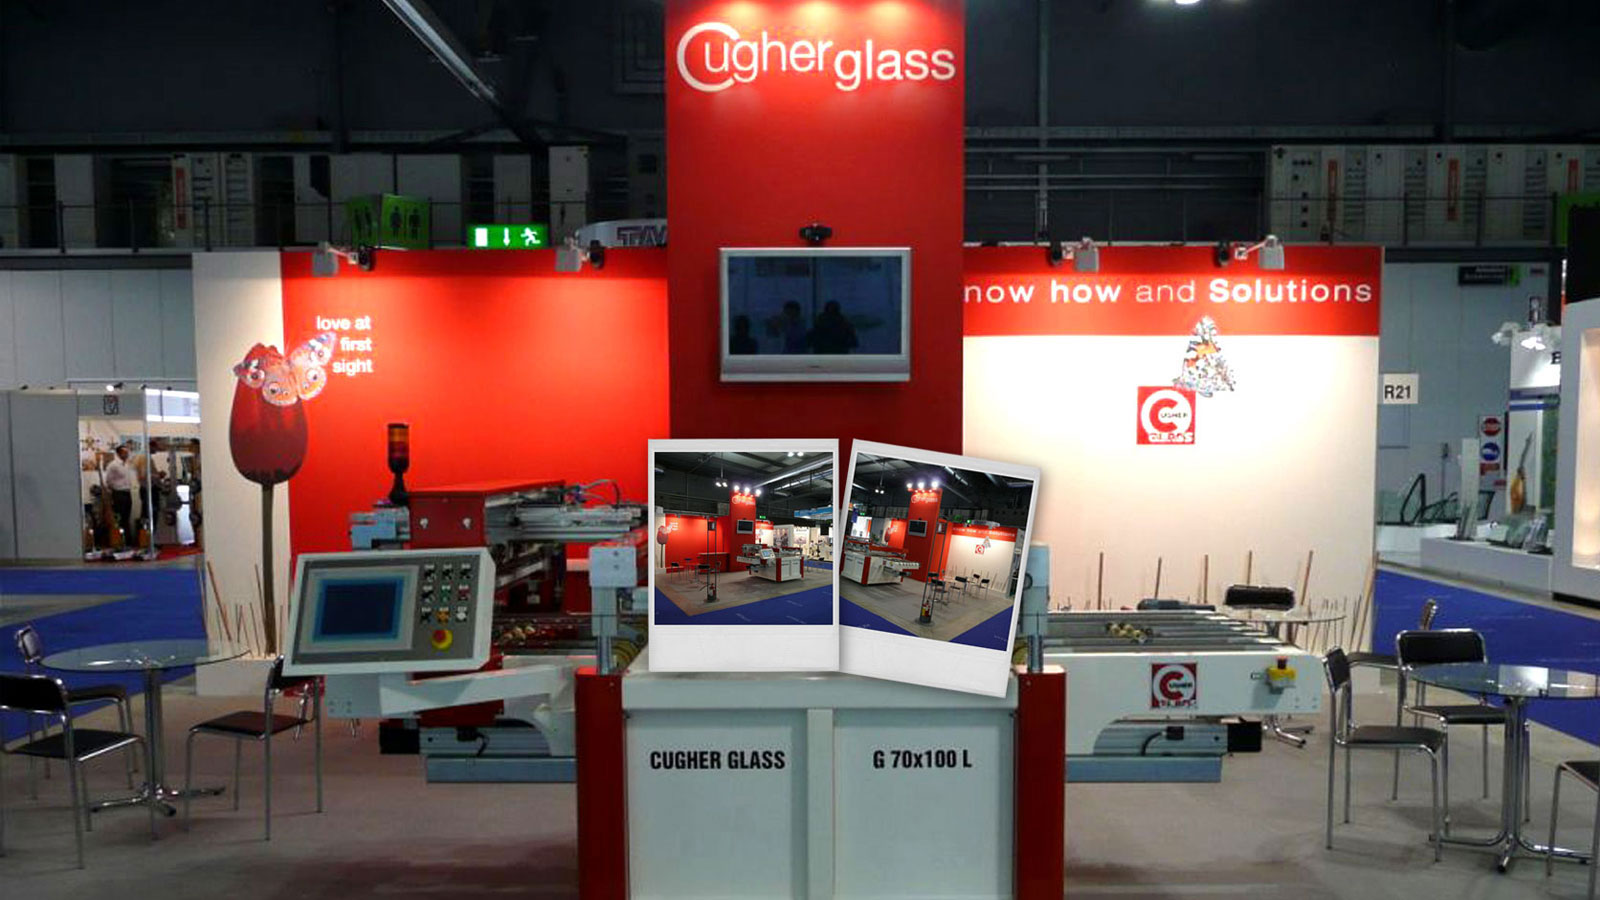 Cugher Glass